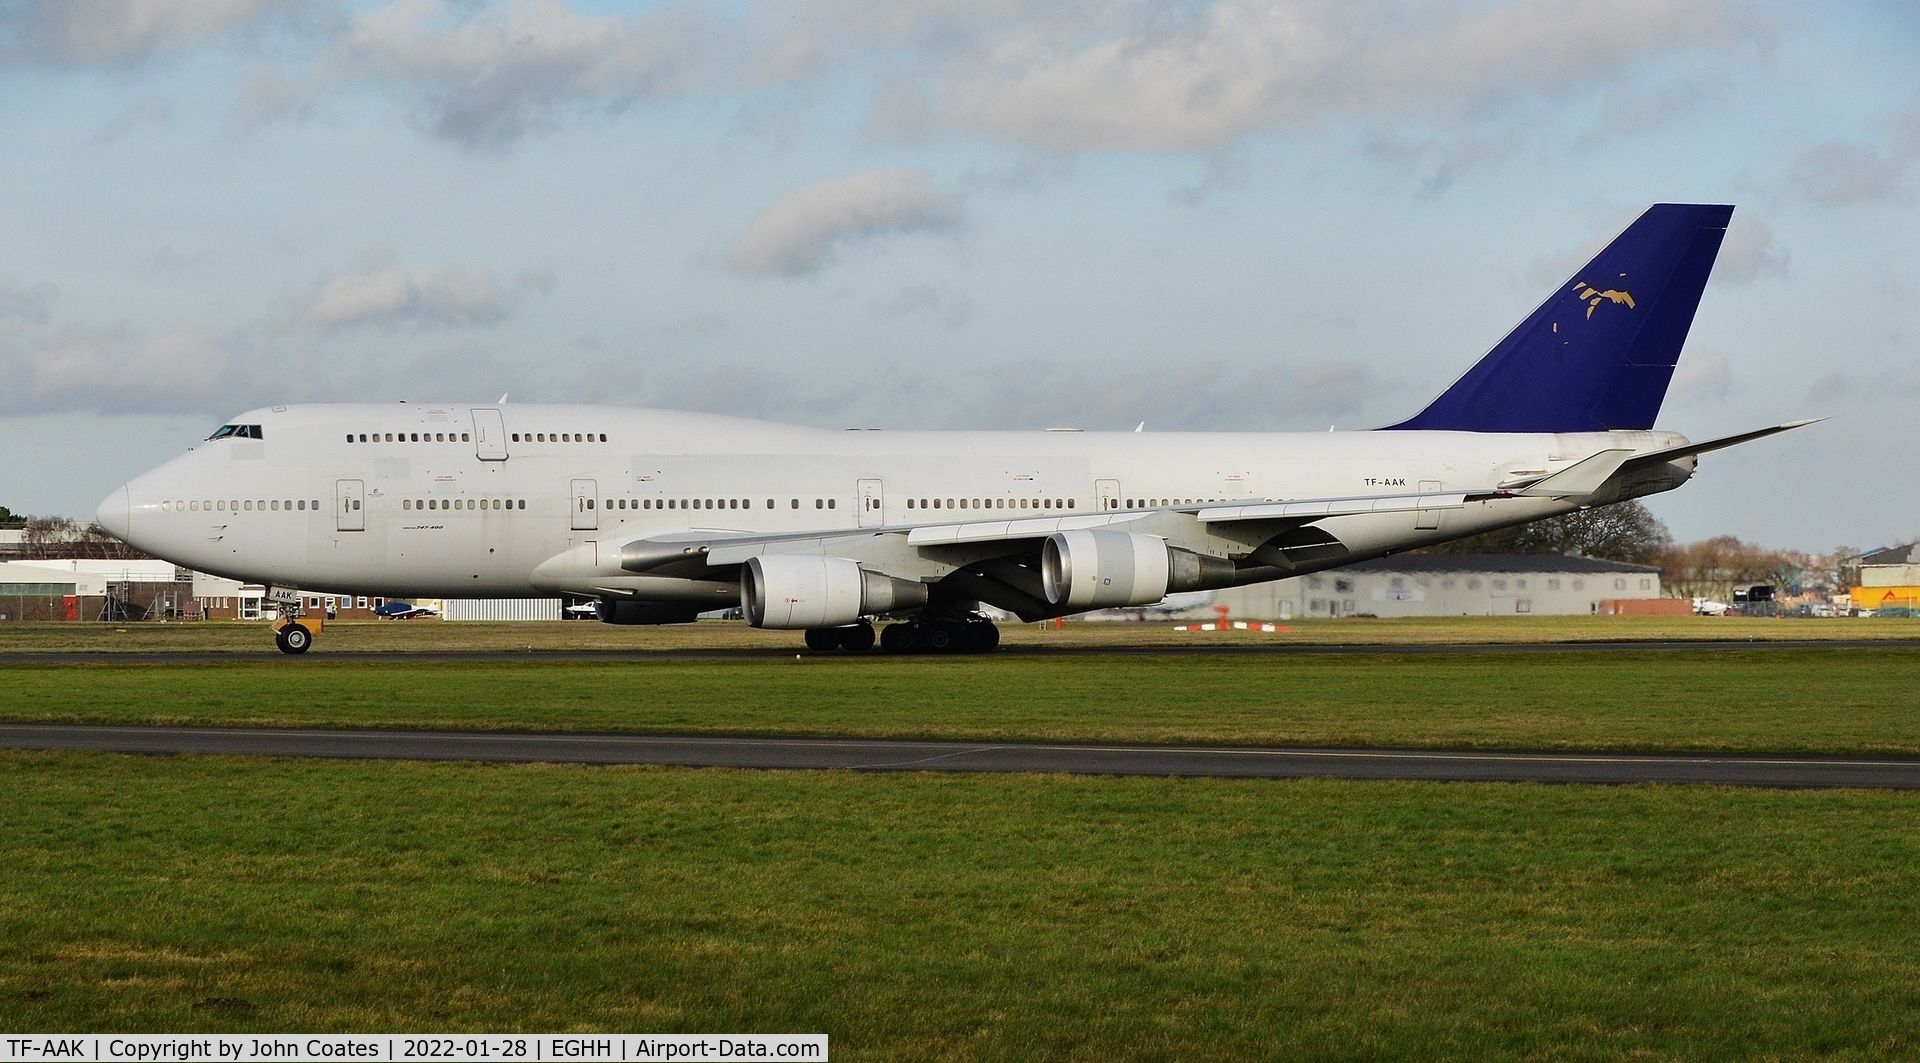 TF-AAK, 2003 Boeing 747-428 C/N 32868, Arriving on 26